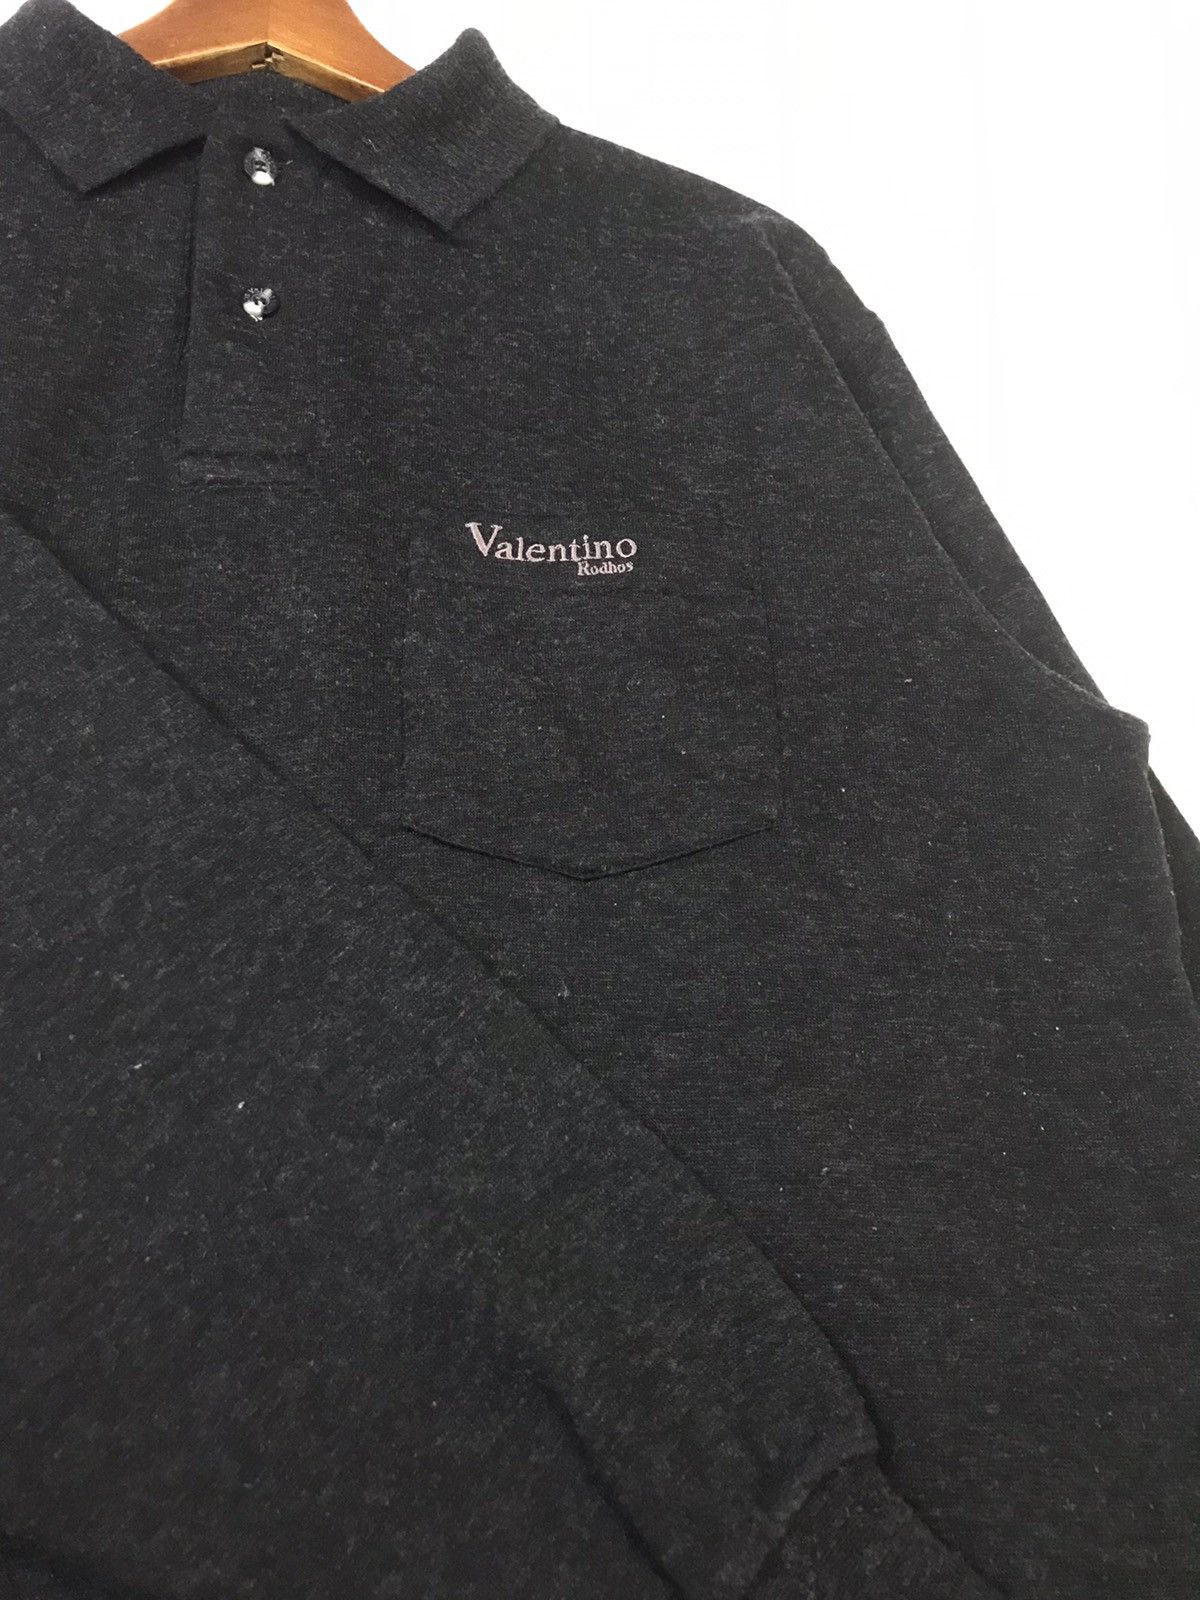 Vintage Rodhos Valentino Wool Polo Sweatshirt Size US M / EU 48-50 / 2 - 5 Thumbnail